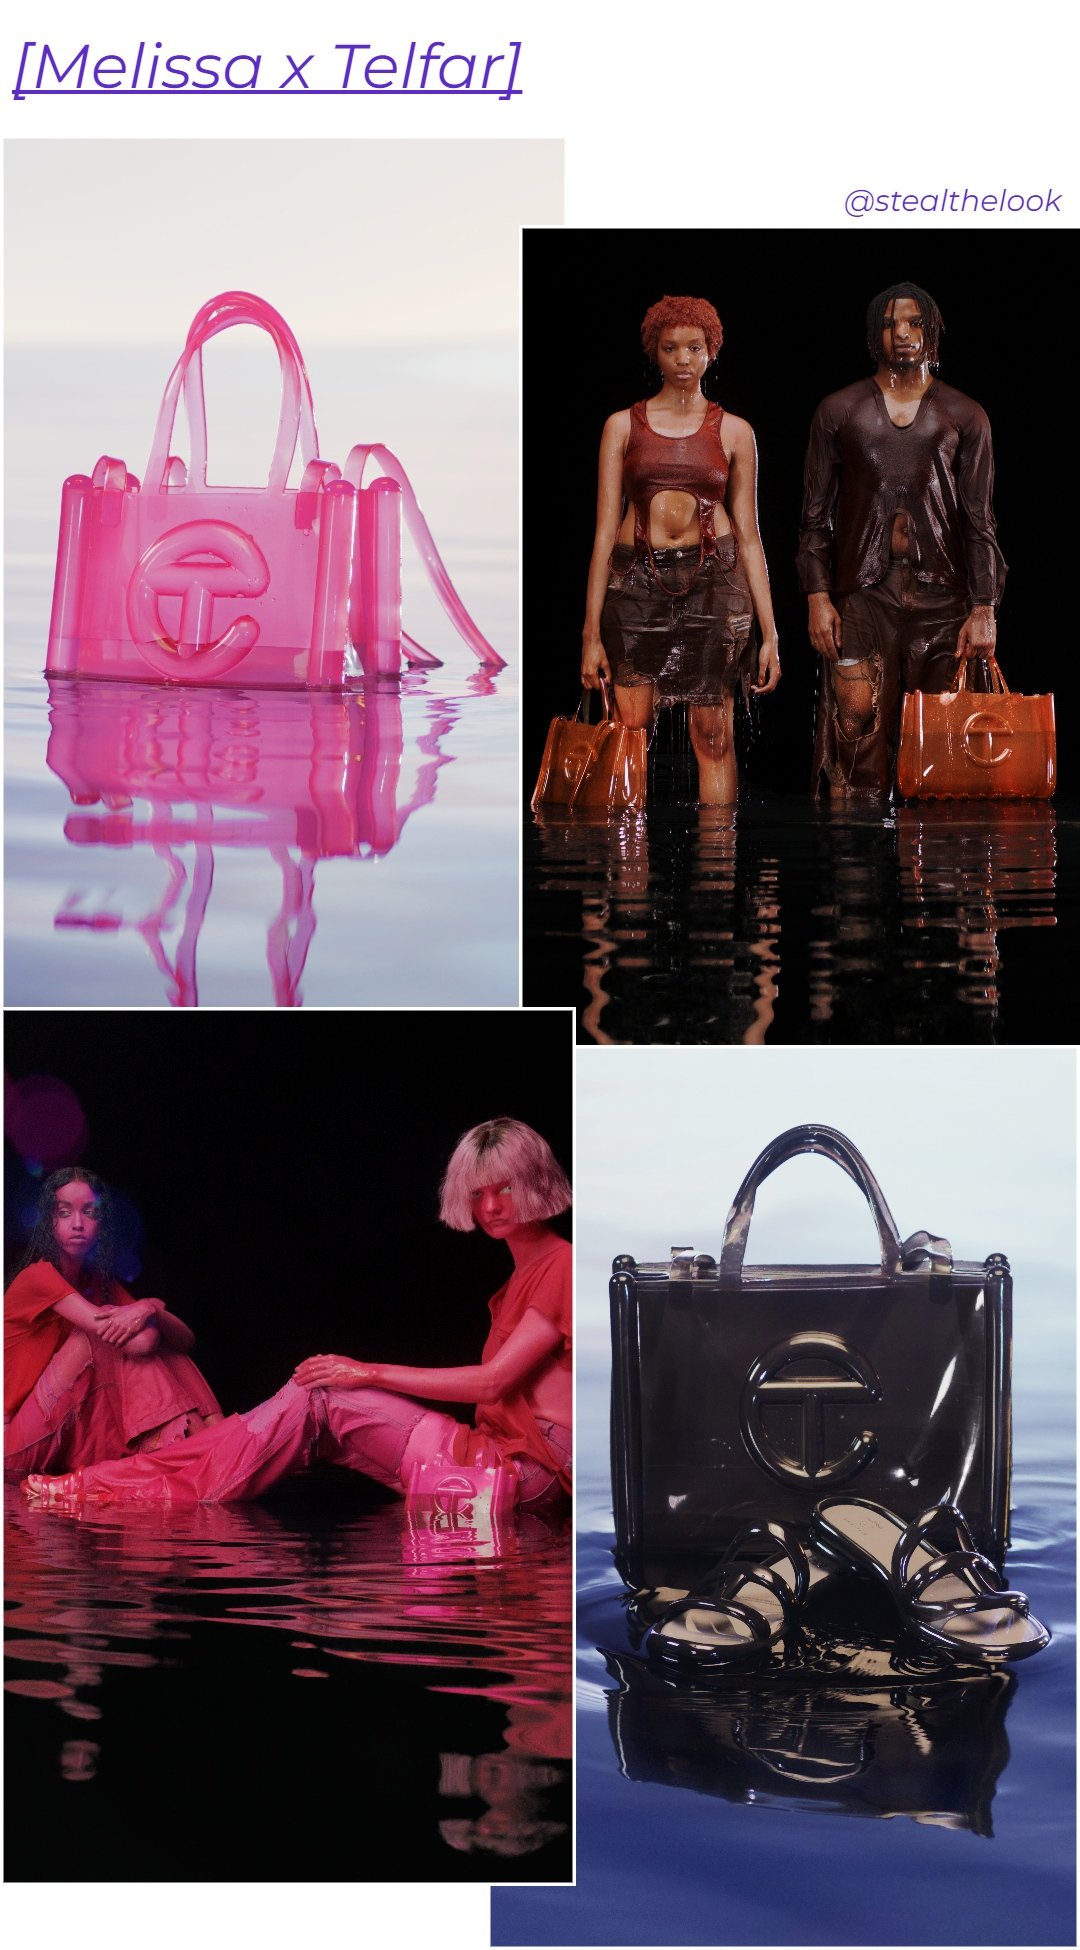 Melissa x Telfar - N/A - lançamentos de moda - inverno - dois modelos negros em pé em um cenário com água usando roupas marrons e segurando bolsas da melissa em plástico - https://stealthelook.com.br